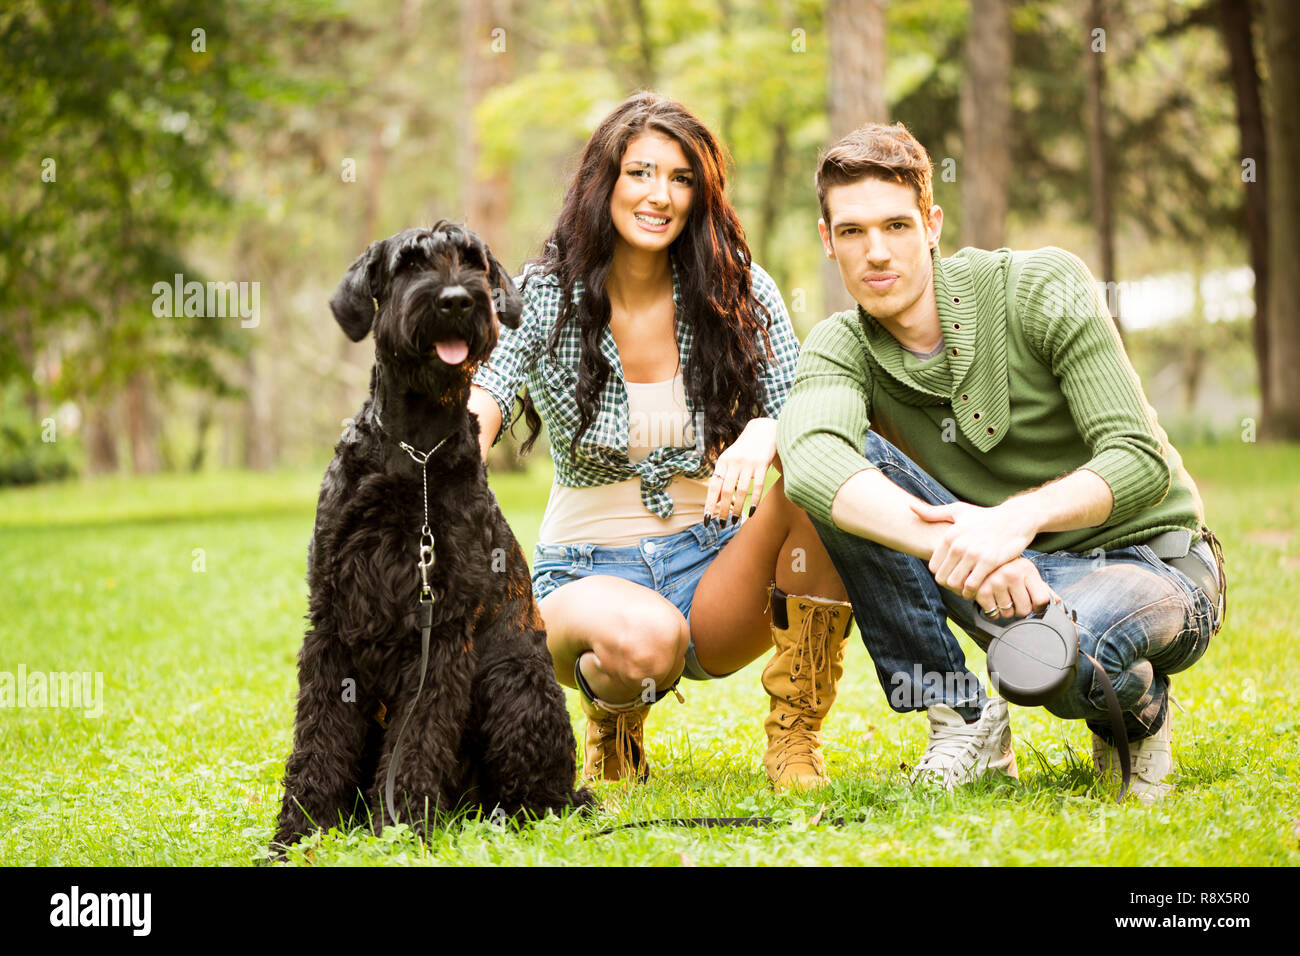 La jeune fille attirante s'accroupit dans le parc avec son petit ami à côté de son chien, un Schnauzer Géant Noir. Banque D'Images